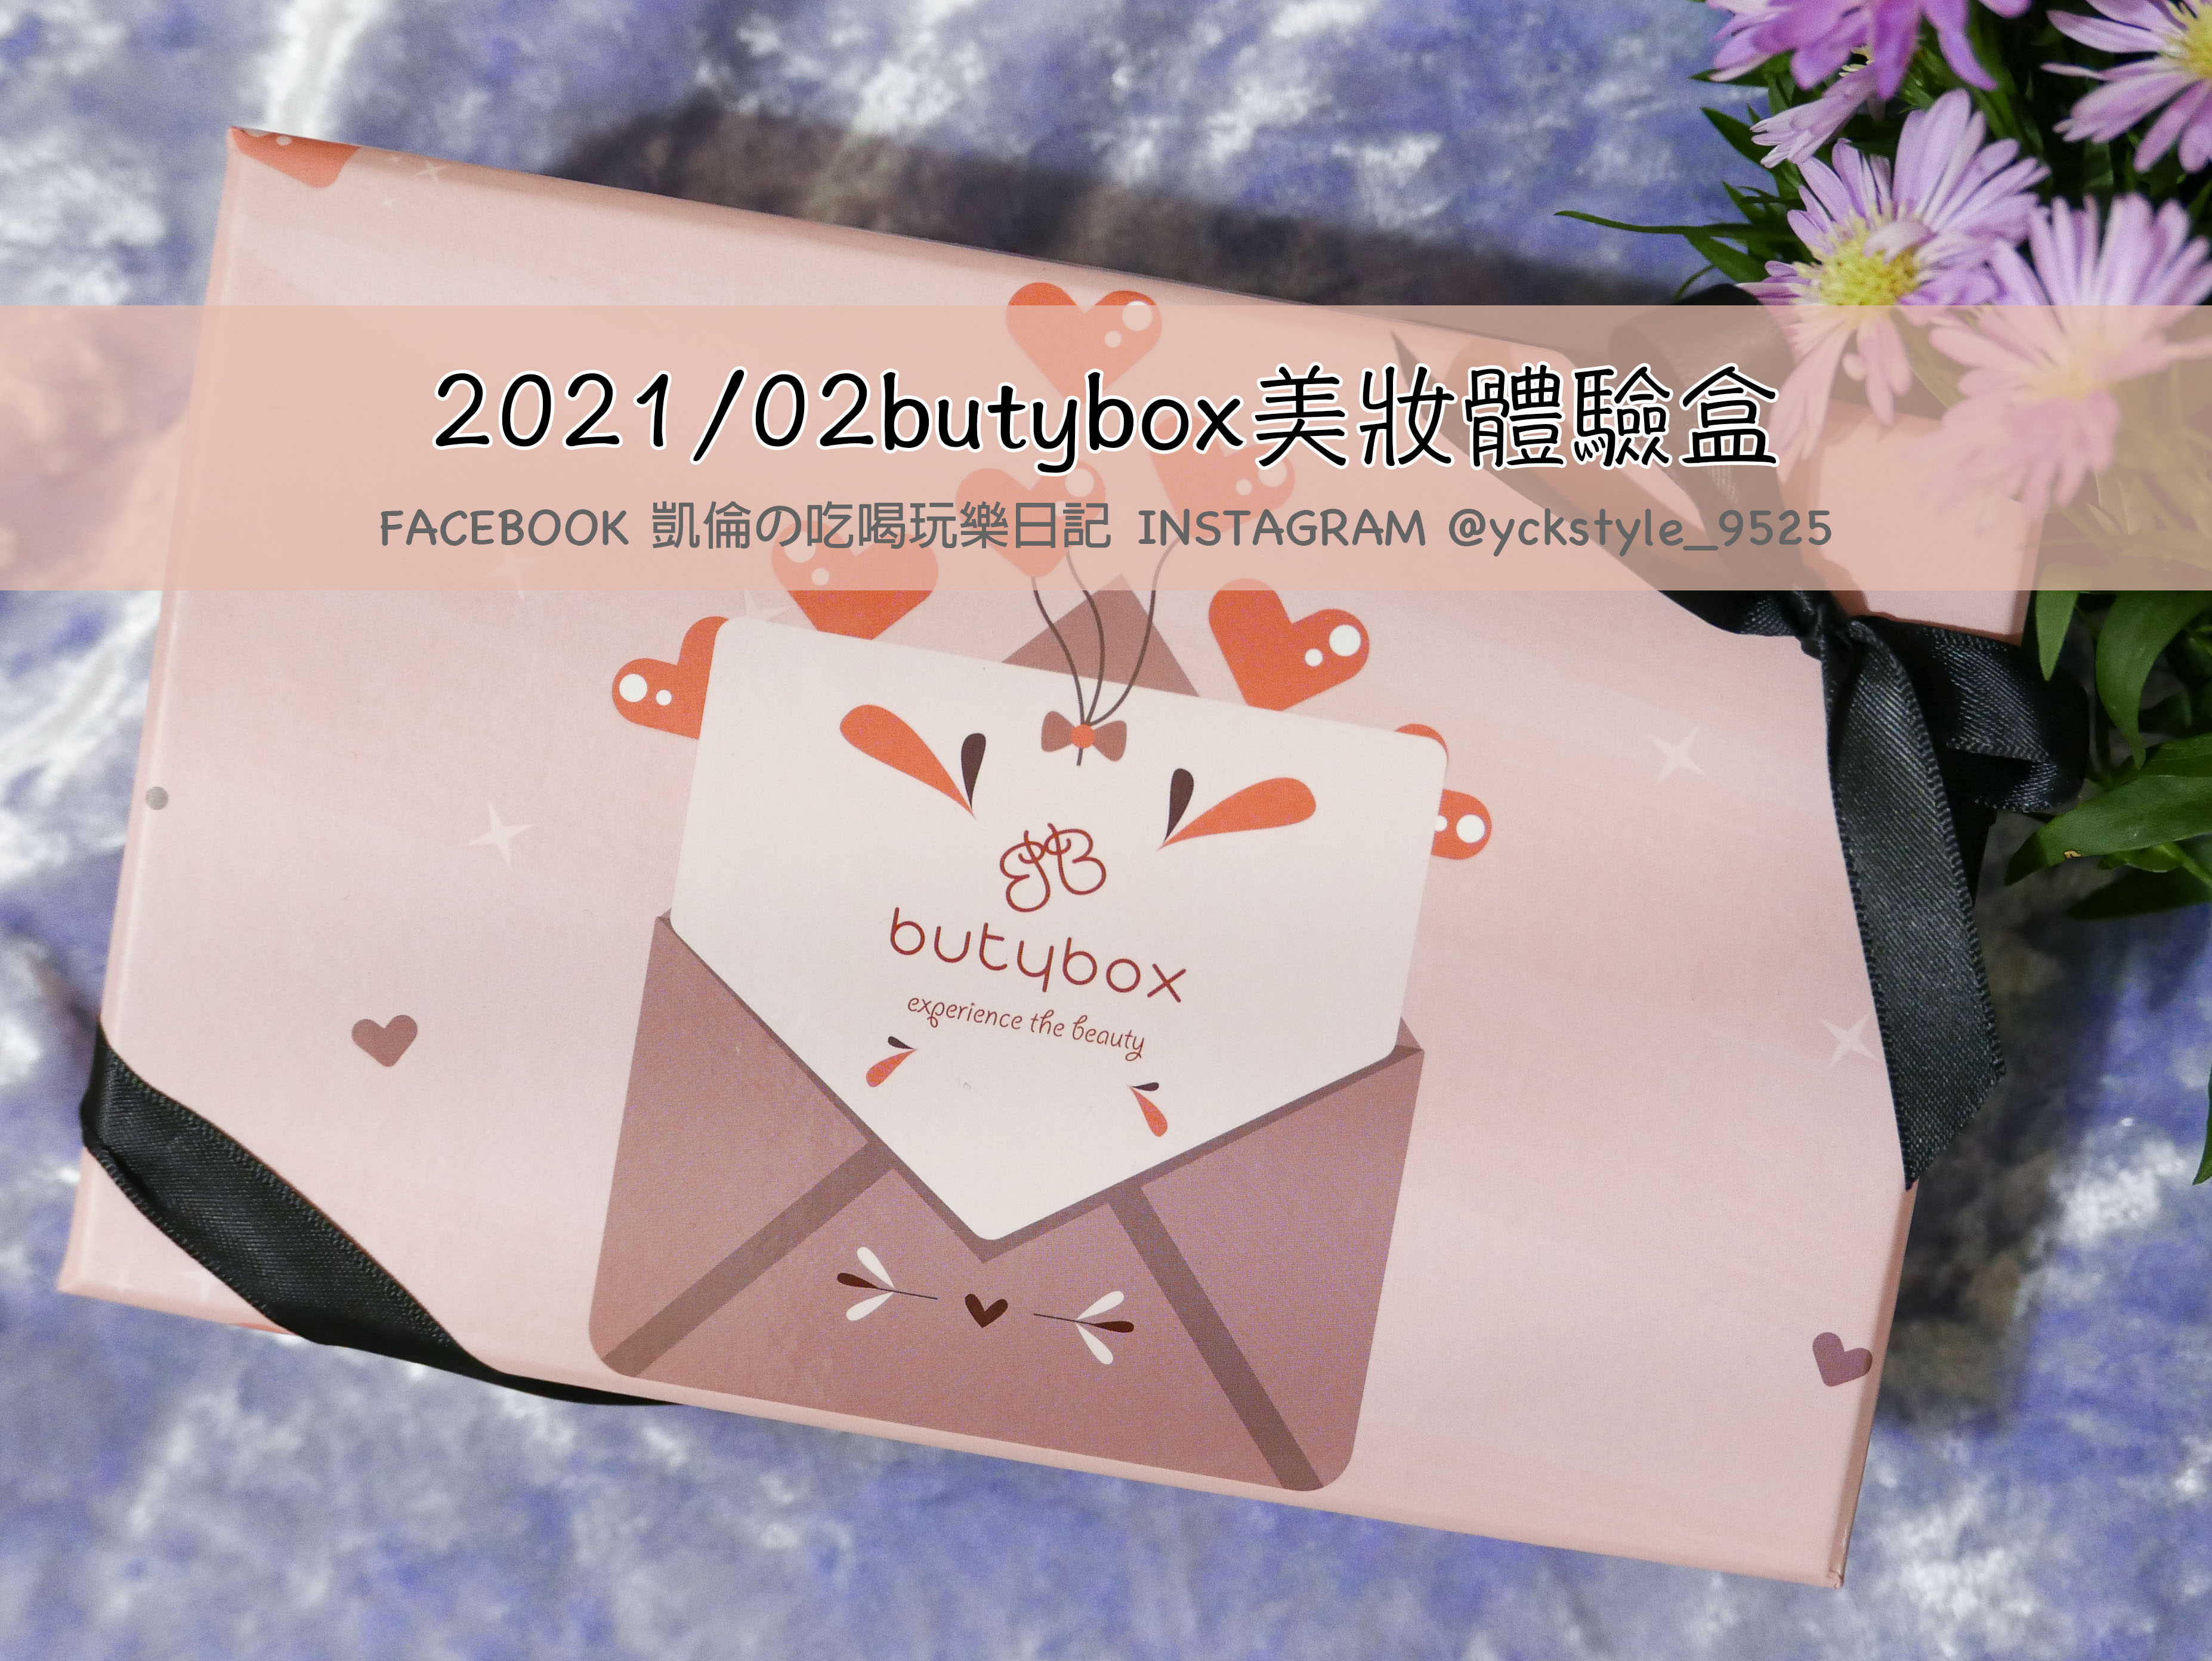 2021年2月butybox美妝體驗盒4.jpg